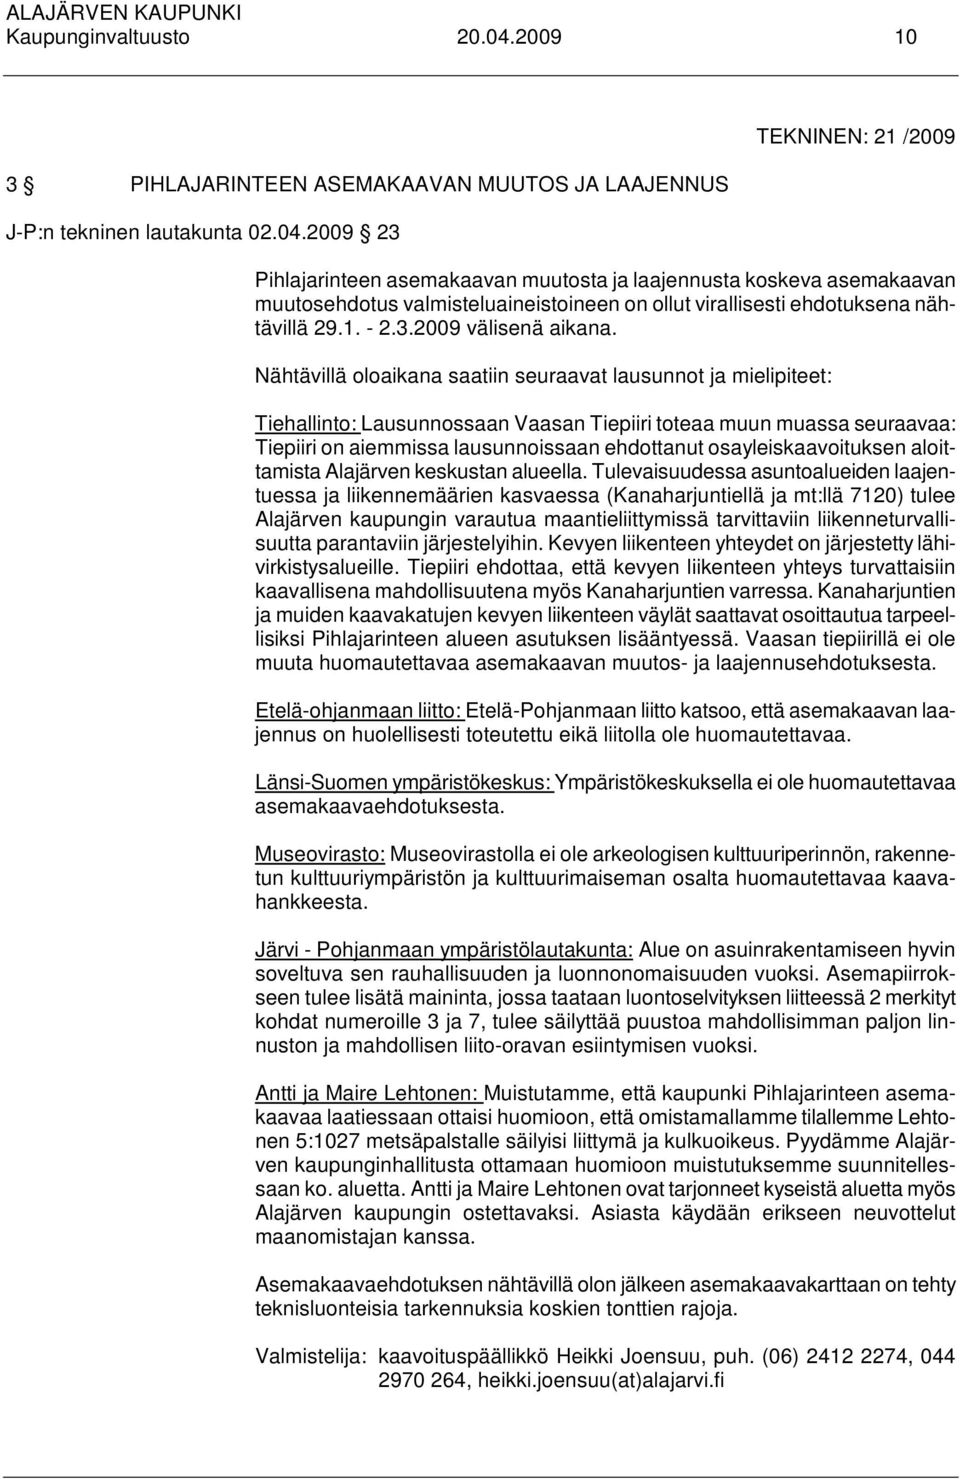 2009 23 TEKNINEN: 21 /2009 Pihlajarinteen asemakaavan muutosta ja laajennusta koskeva asemakaavan muutosehdotus valmisteluaineistoineen on ollut virallisesti ehdotuksena nähtävillä 29.1. - 2.3.2009 välisenä aikana.